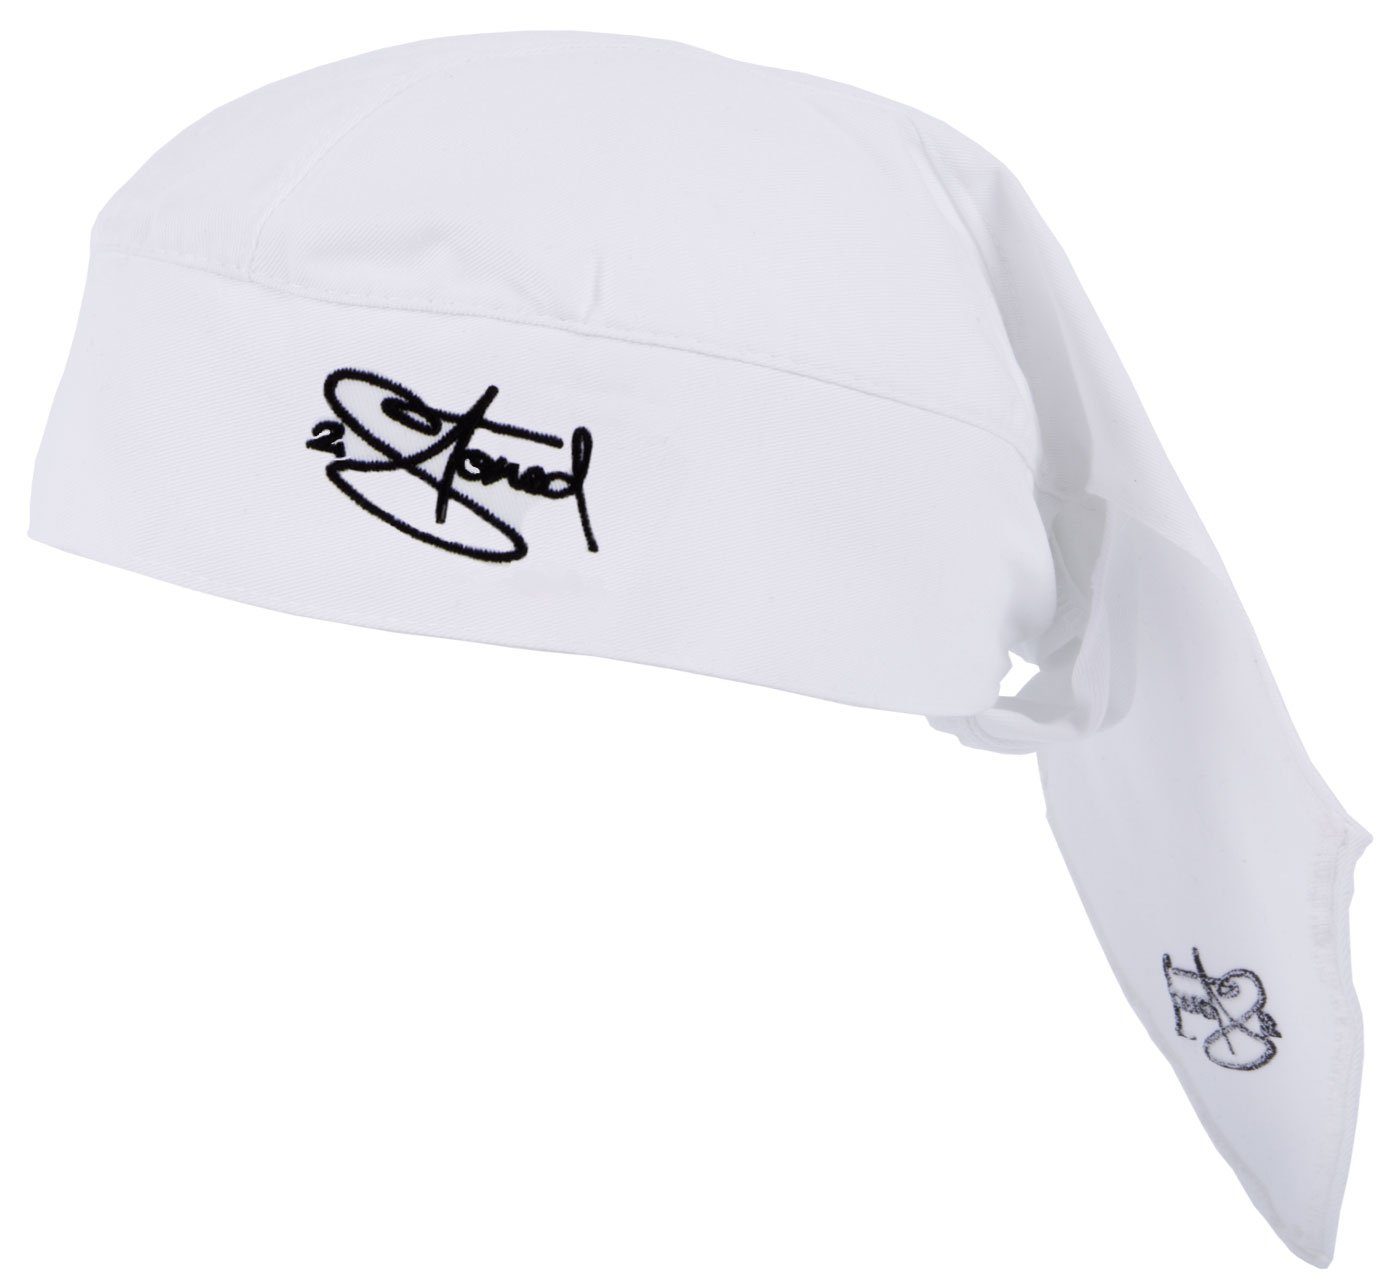 2Stoned Bandana Kopftuch Biker Cap Classic bestickt für Damen, Herren und Kinder, Einheitsgröße Weiß